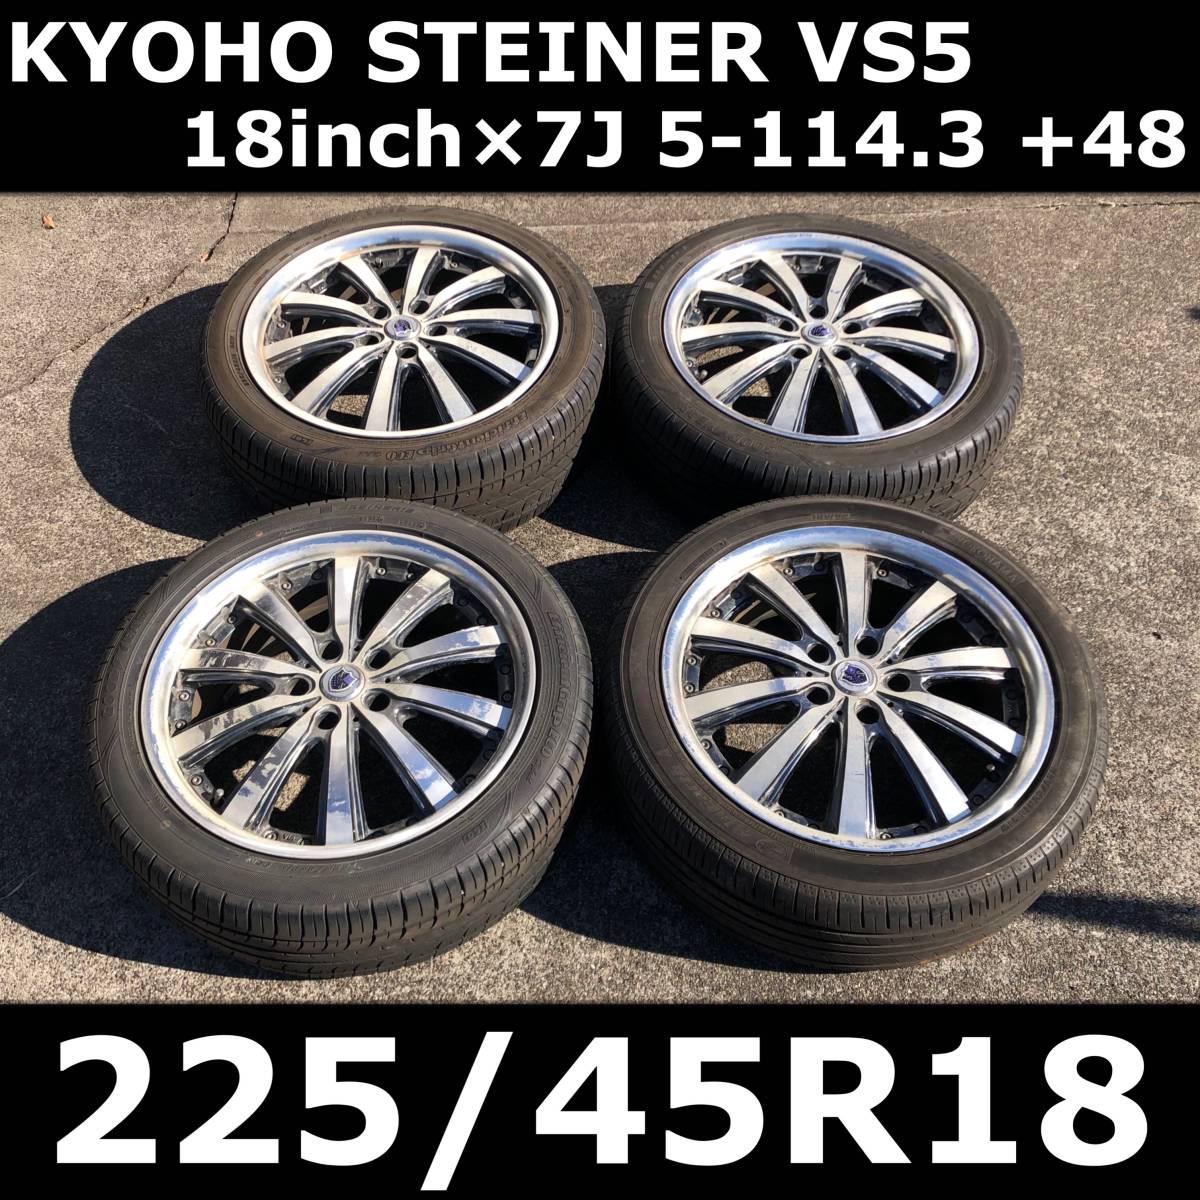 【18インチ】KYOHO STEINER VS5 共豊 シュタイナー アルミホイール 18×7J 5-114.3 +48 & 225/45R18 中古 タイヤ 4本セット